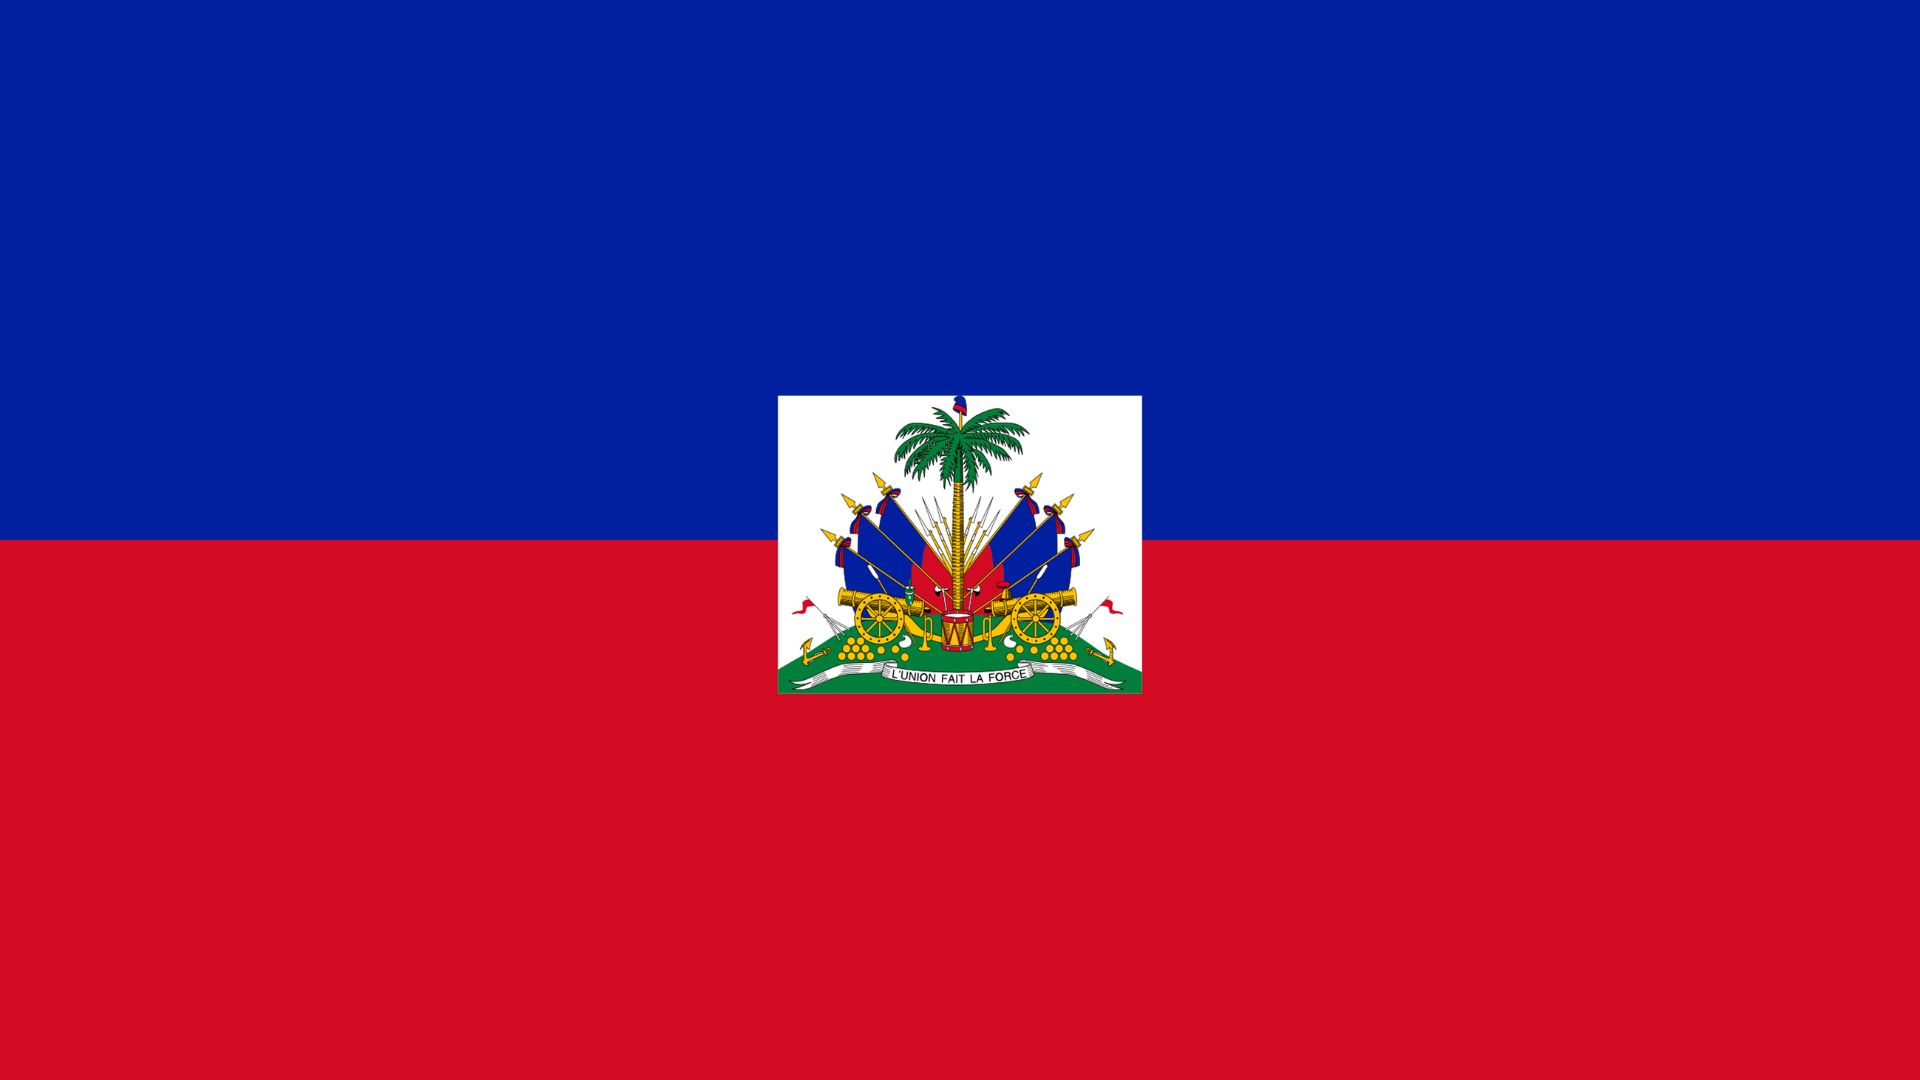 A bandeira do Haiti possui duas cores dispostas em faizas na horizontal. São elas: vermelho e azul. No centro, o brasão do país.